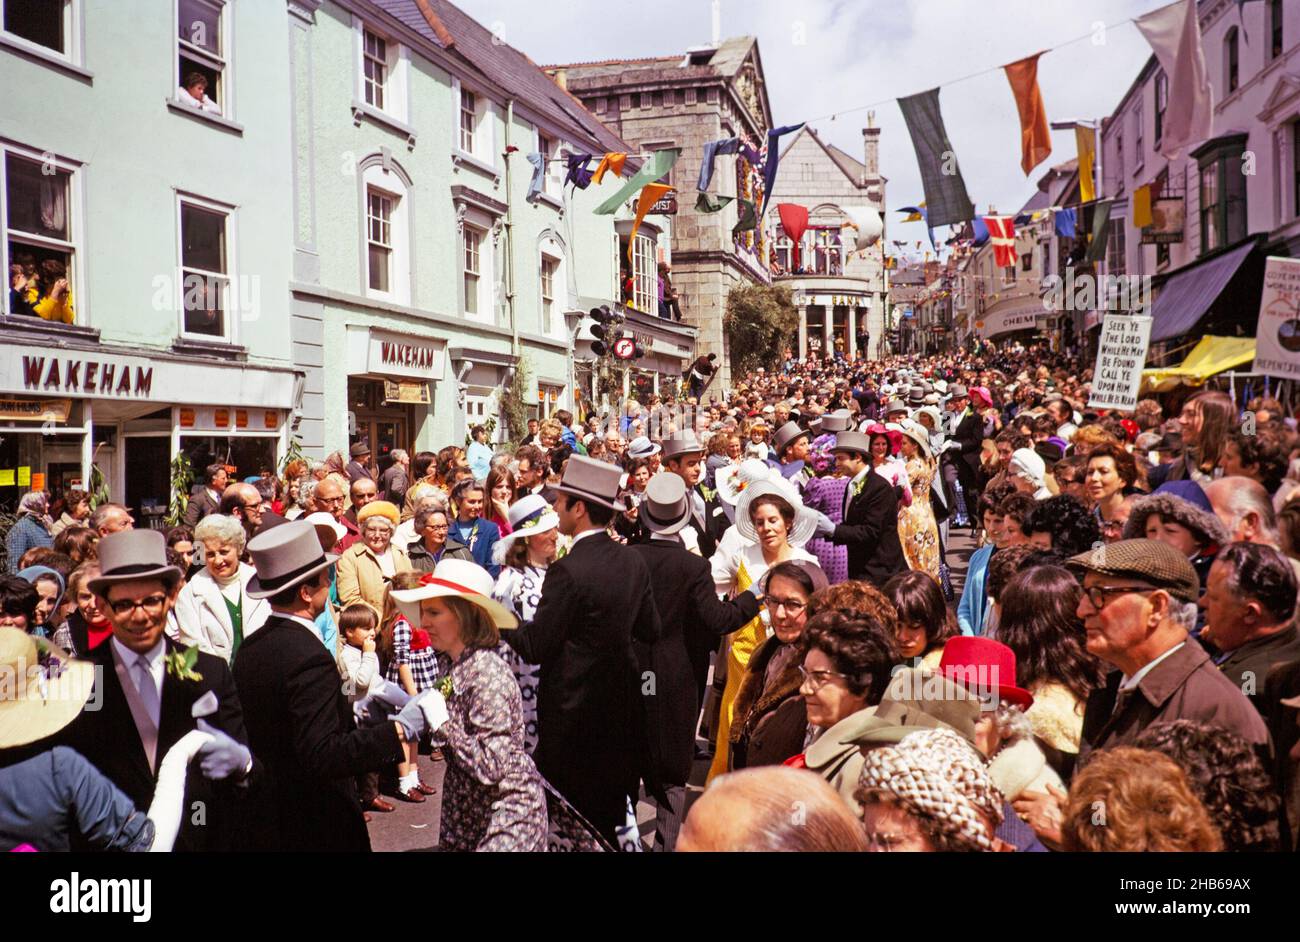 Flora Day, Helston, Cornwall, Angleterre, Royaume-Uni 1973 - la foule regarde les couples jouer la danse Furry dans les rues de la ville Banque D'Images